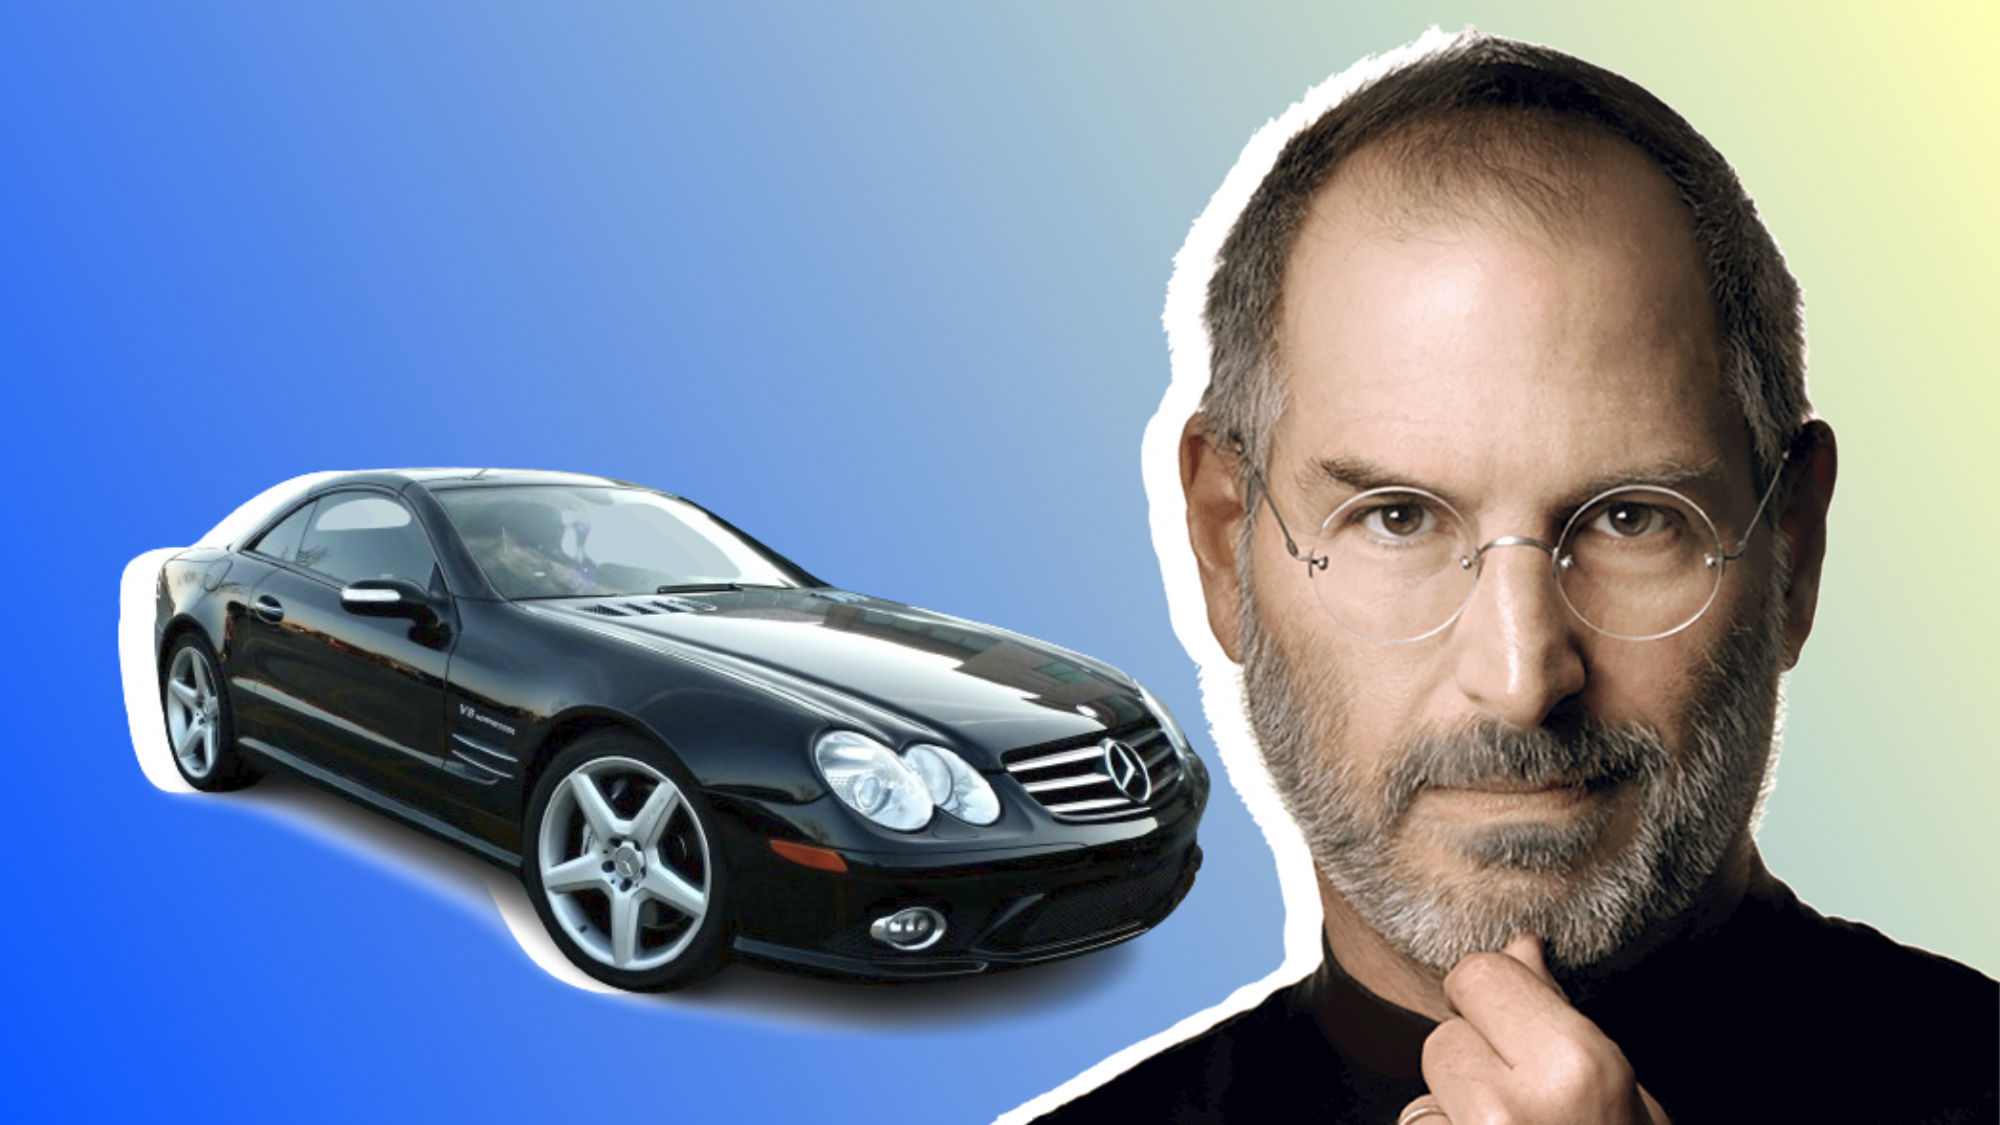 Steve Jobs no llevaba matrícula en su mercedes. ¿Cómo fue posible sin incumplir la ley?